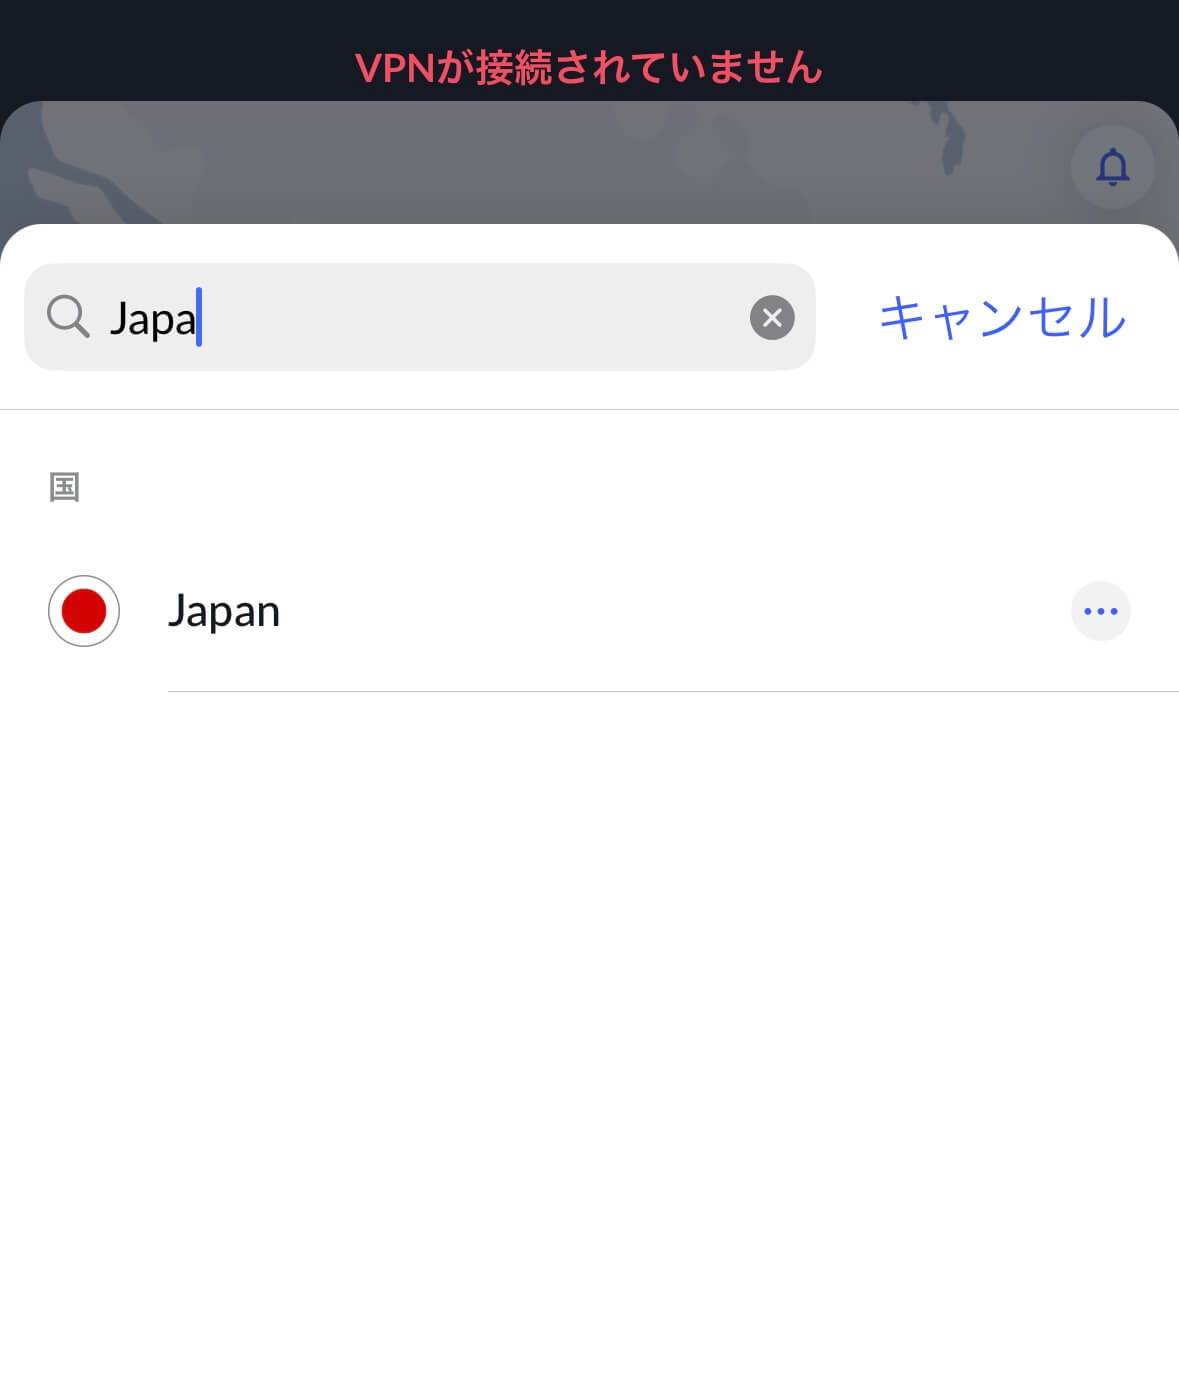 接続したいサーバ「Japan」を選択する